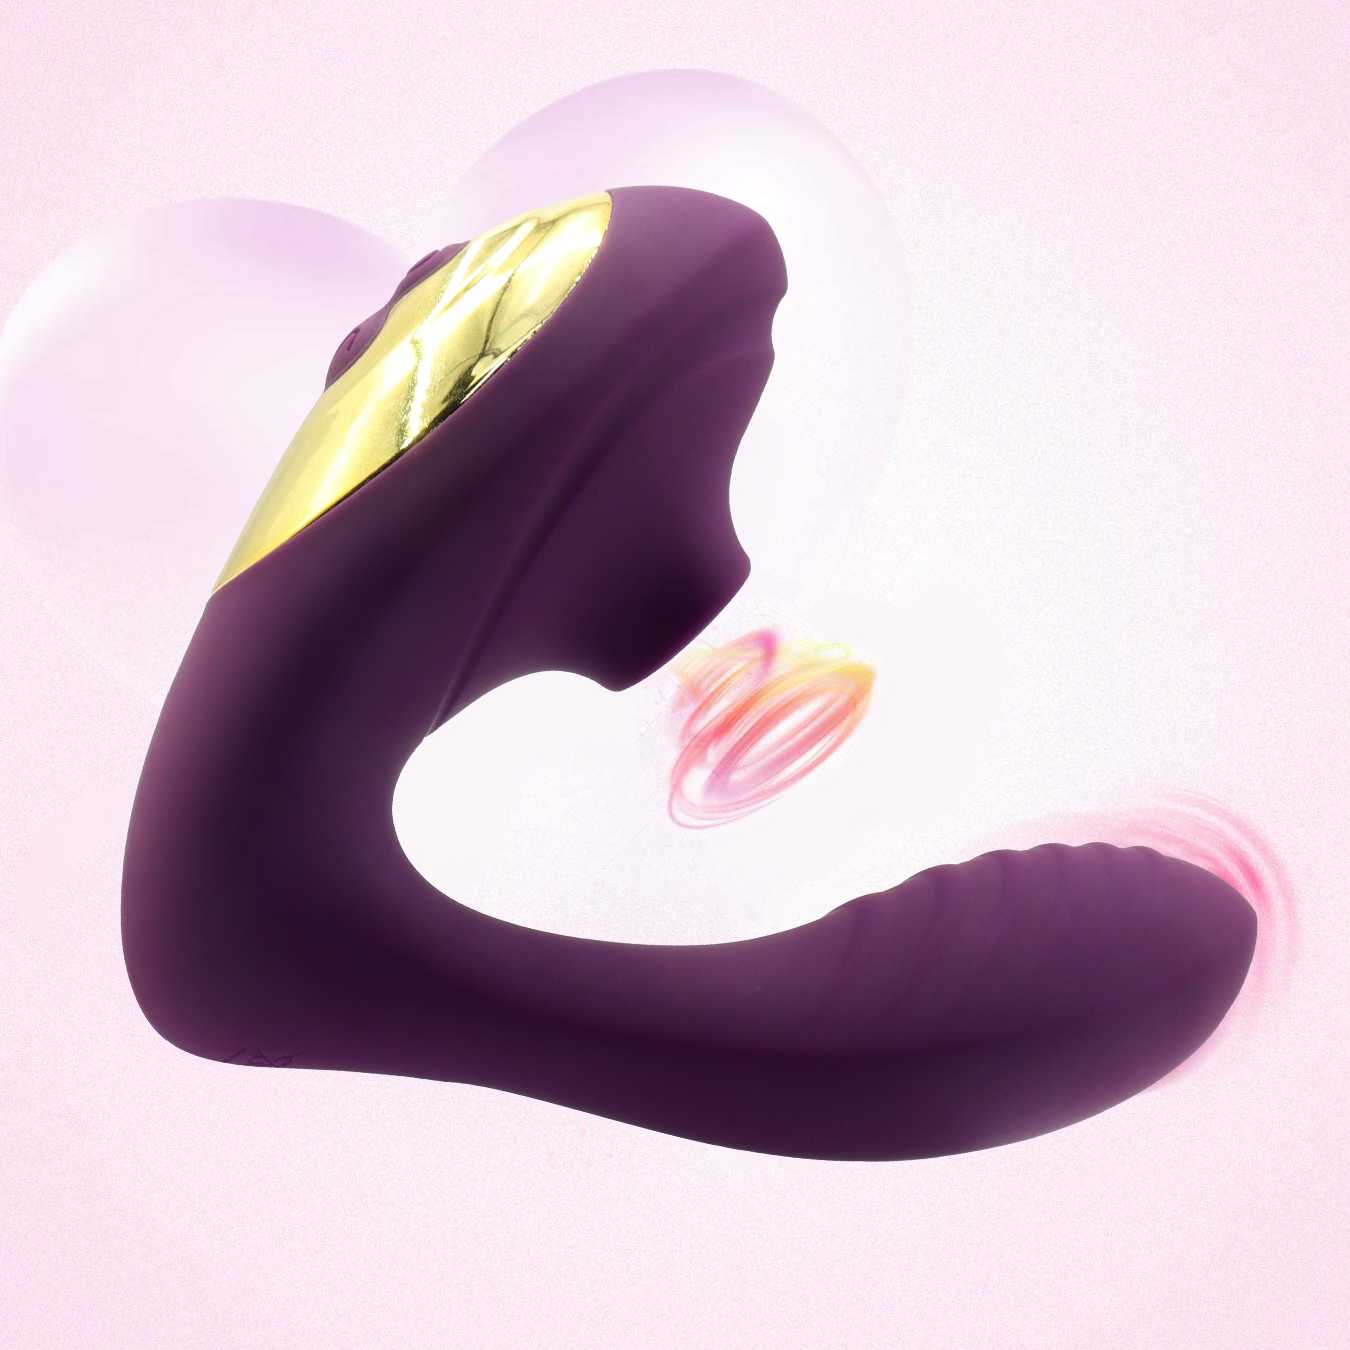 Tanio Bezpieczny Vagina Clit Sucker - wibrator ssący do stymulacji… sklep